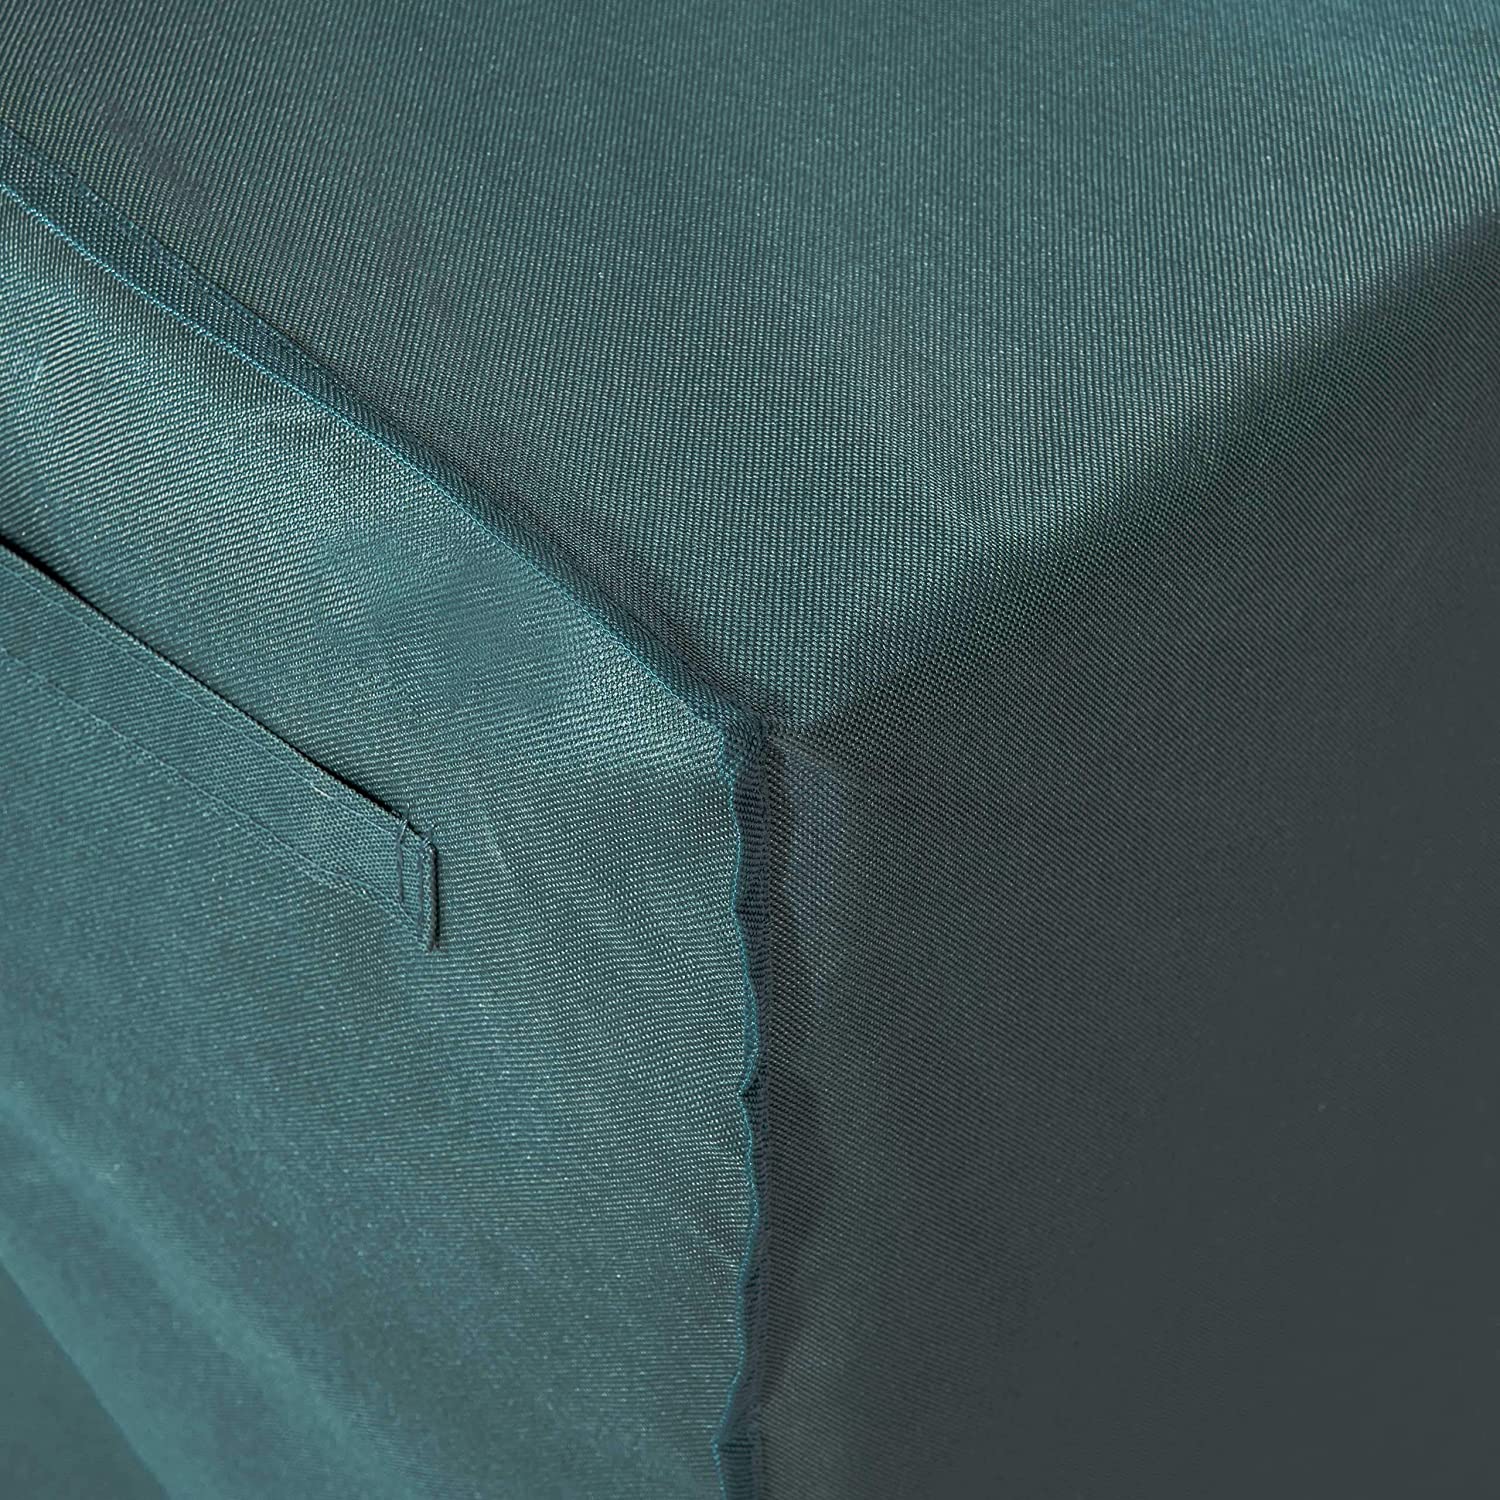 Abdeckplane für Gartentisch - 183 x 114,3 x 67,3 cm - Grün/Grau